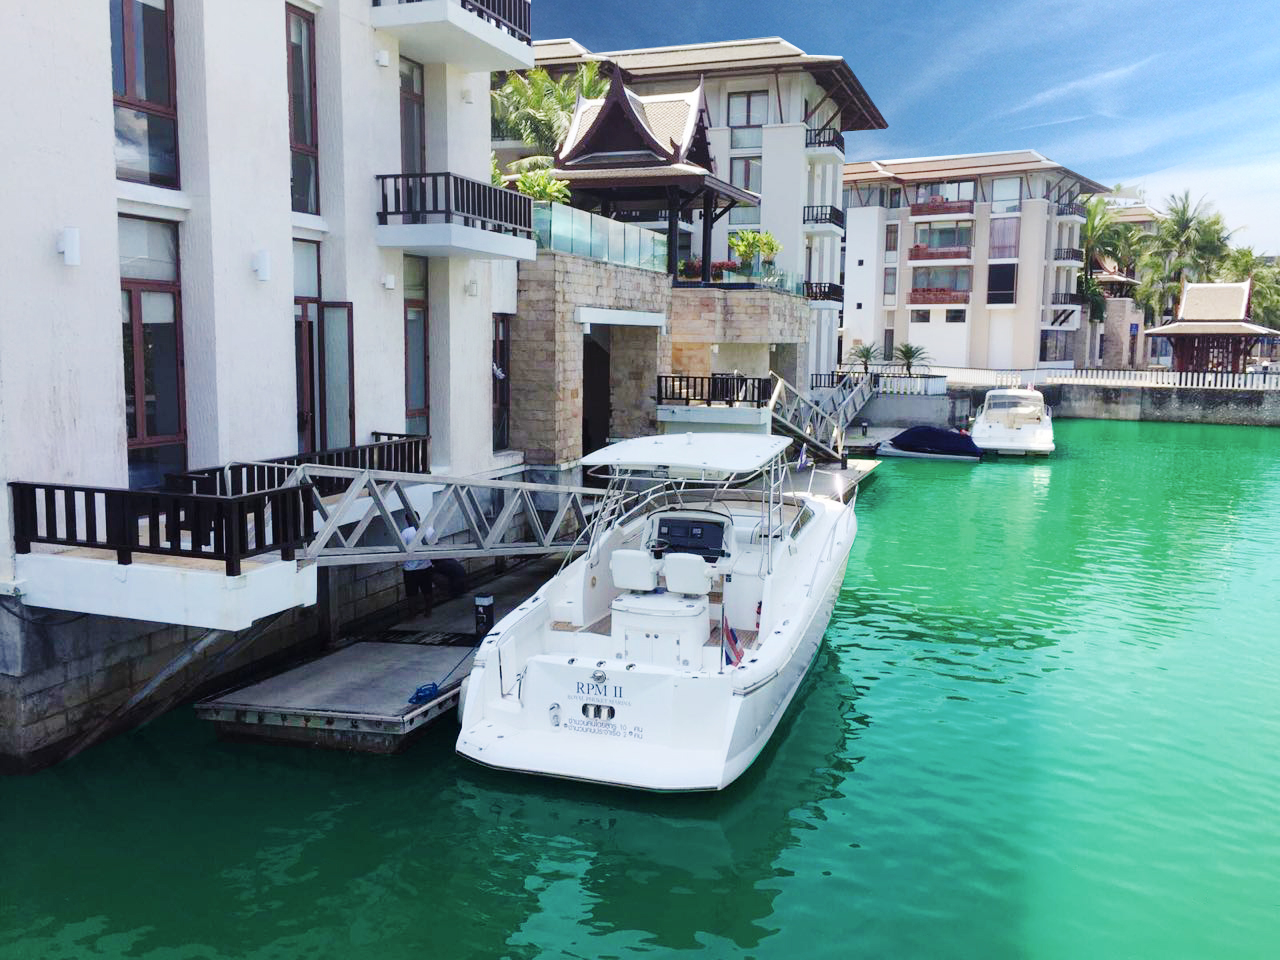 RPM II Boat For Sale​ at Royal Phuket Marina - 13